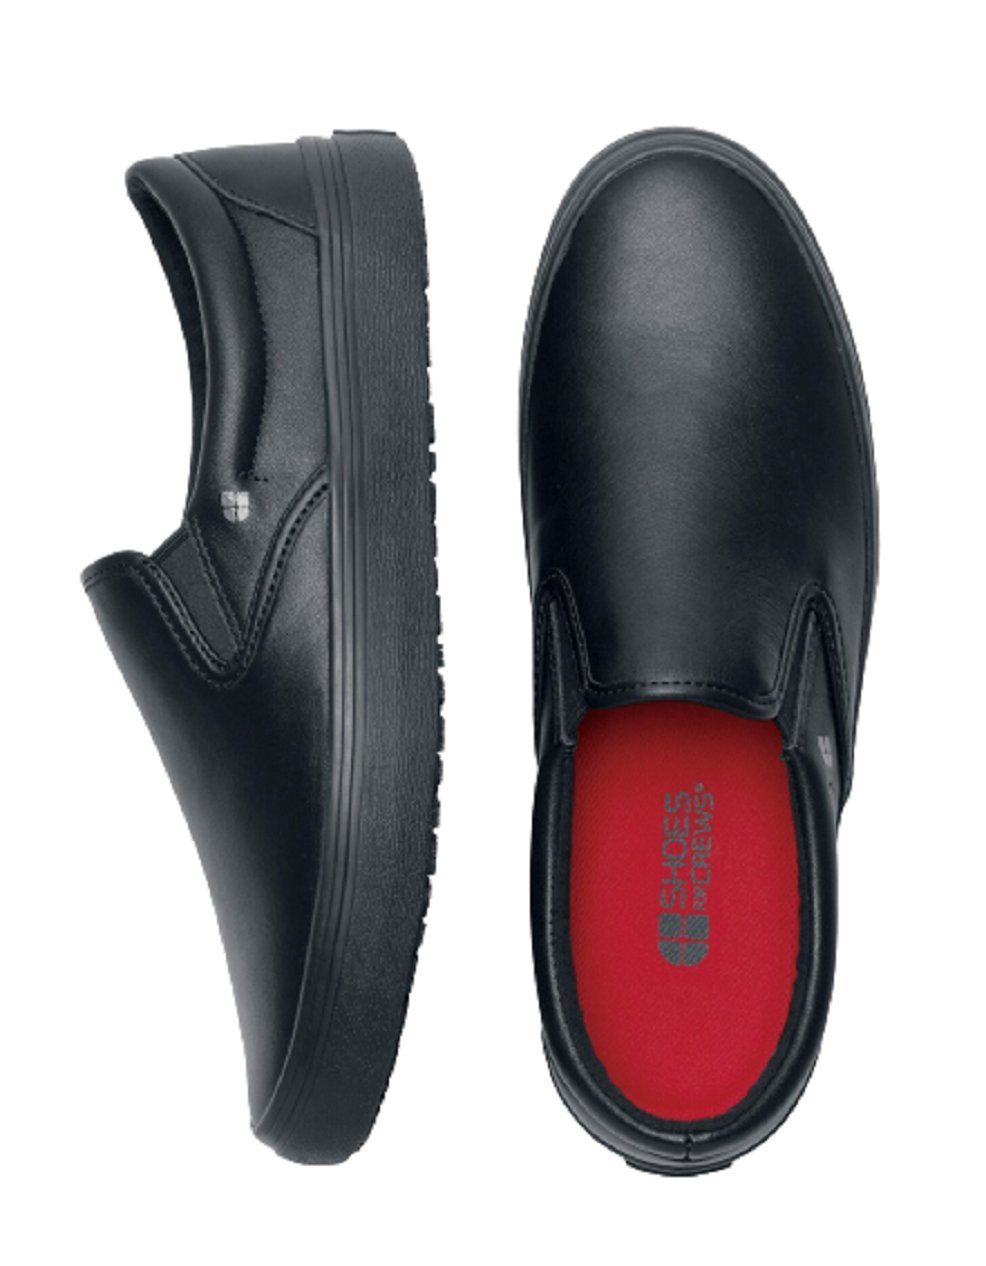 Shoes For Crews und Arbeitsschuh Arbeit schwarz Slip MERLIN wasserbeständig Leder, Freizeit, Slipper on, Leder, für